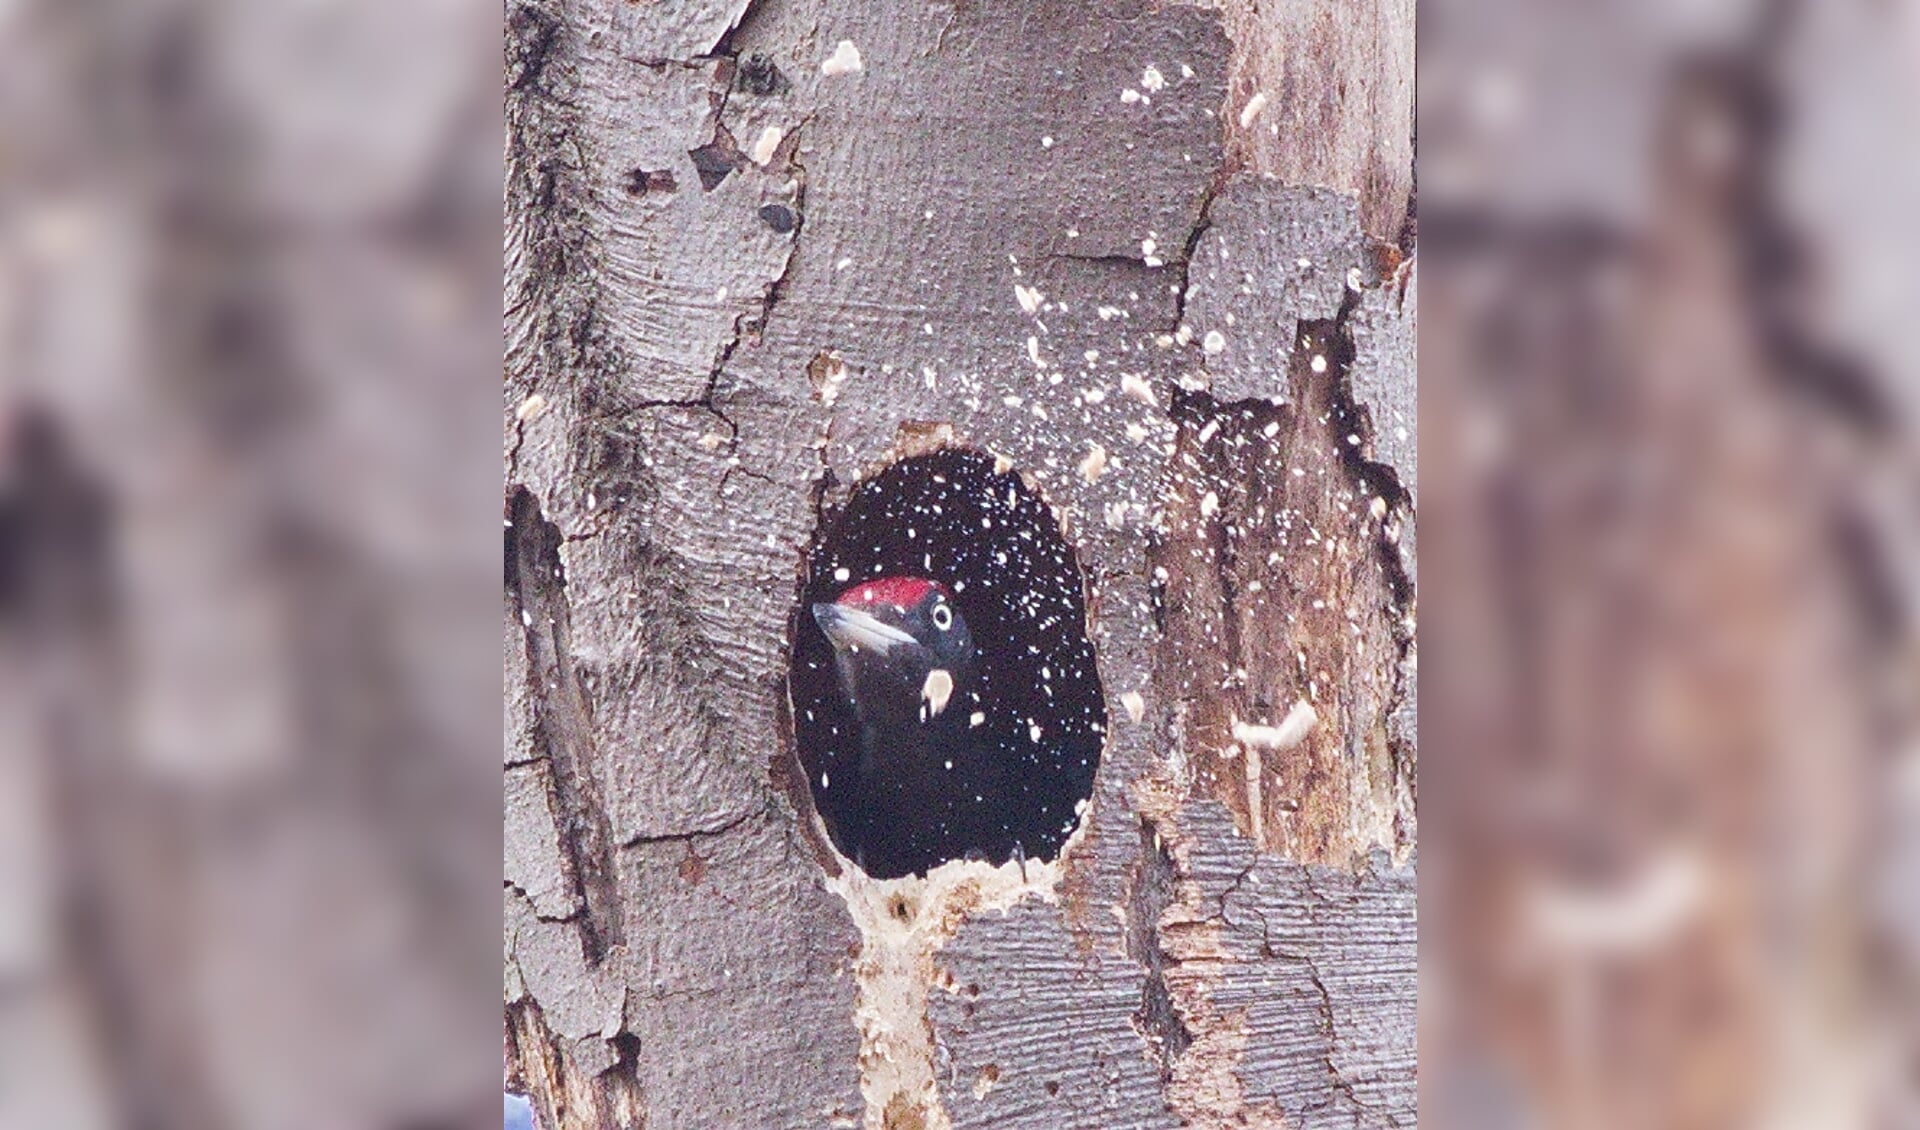 Een zwarte specht maakt een nieuw ovaal nest; hij gooit hier de houtsnippers uit het nest (Ridderoordse bossen, april 2021).